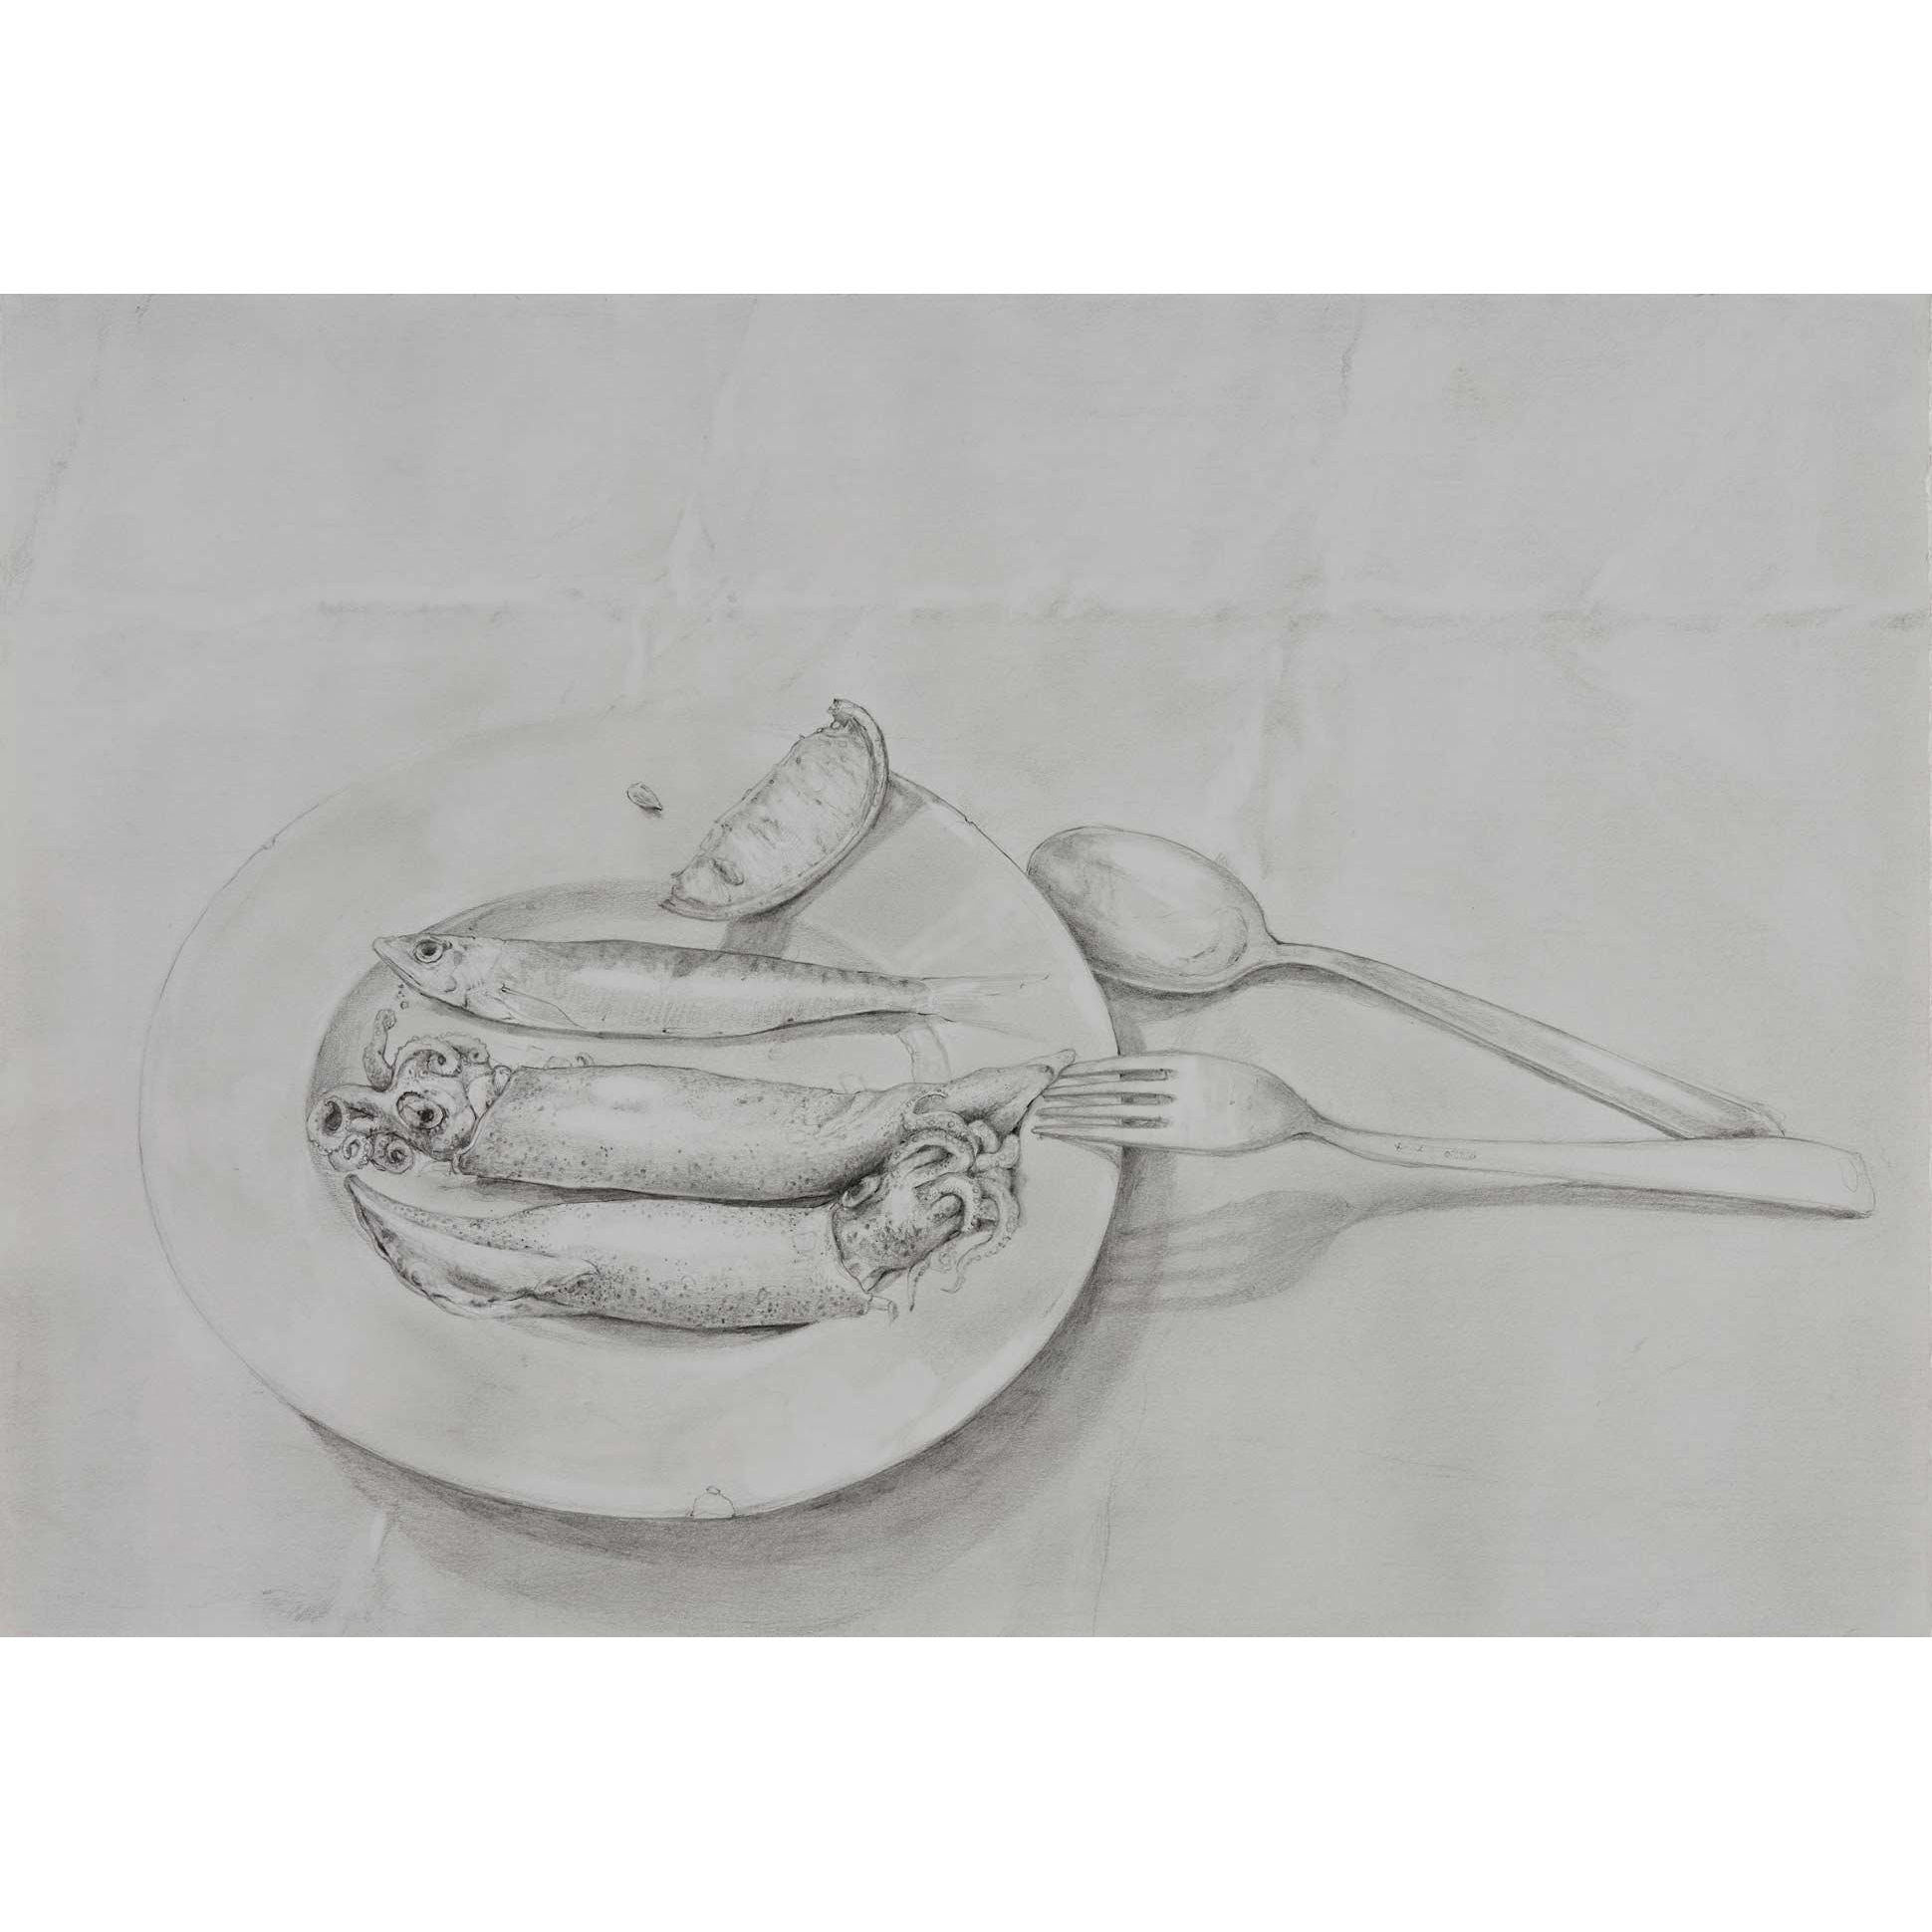 mirra whale | Cuttlefish and sardines - Mitchell Fine Art